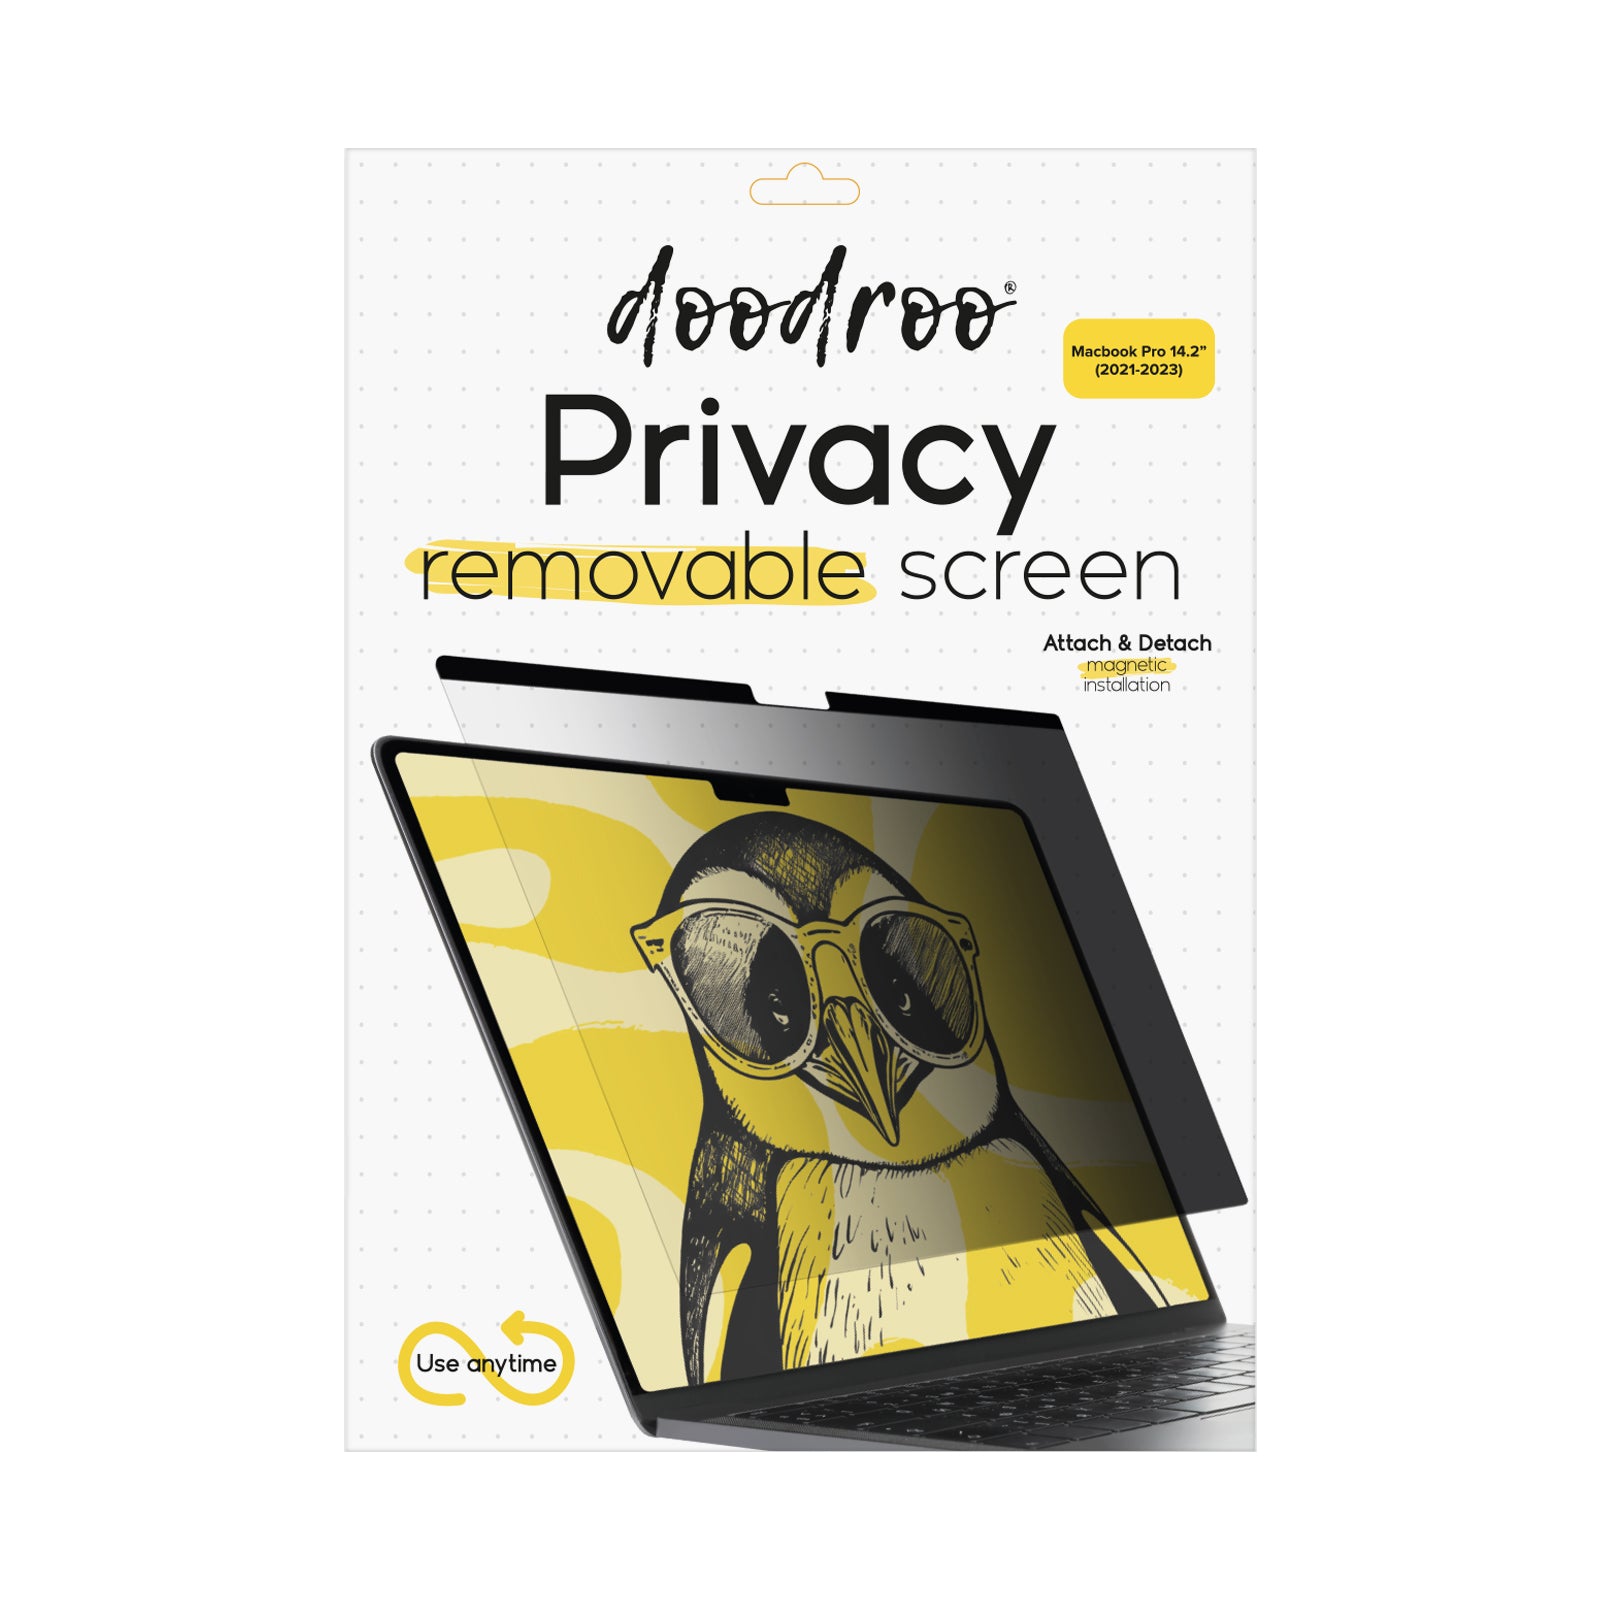 Filtre protecteur de confidentialité, amovible, pour MacBook Pro 14.2" (2021-2023)